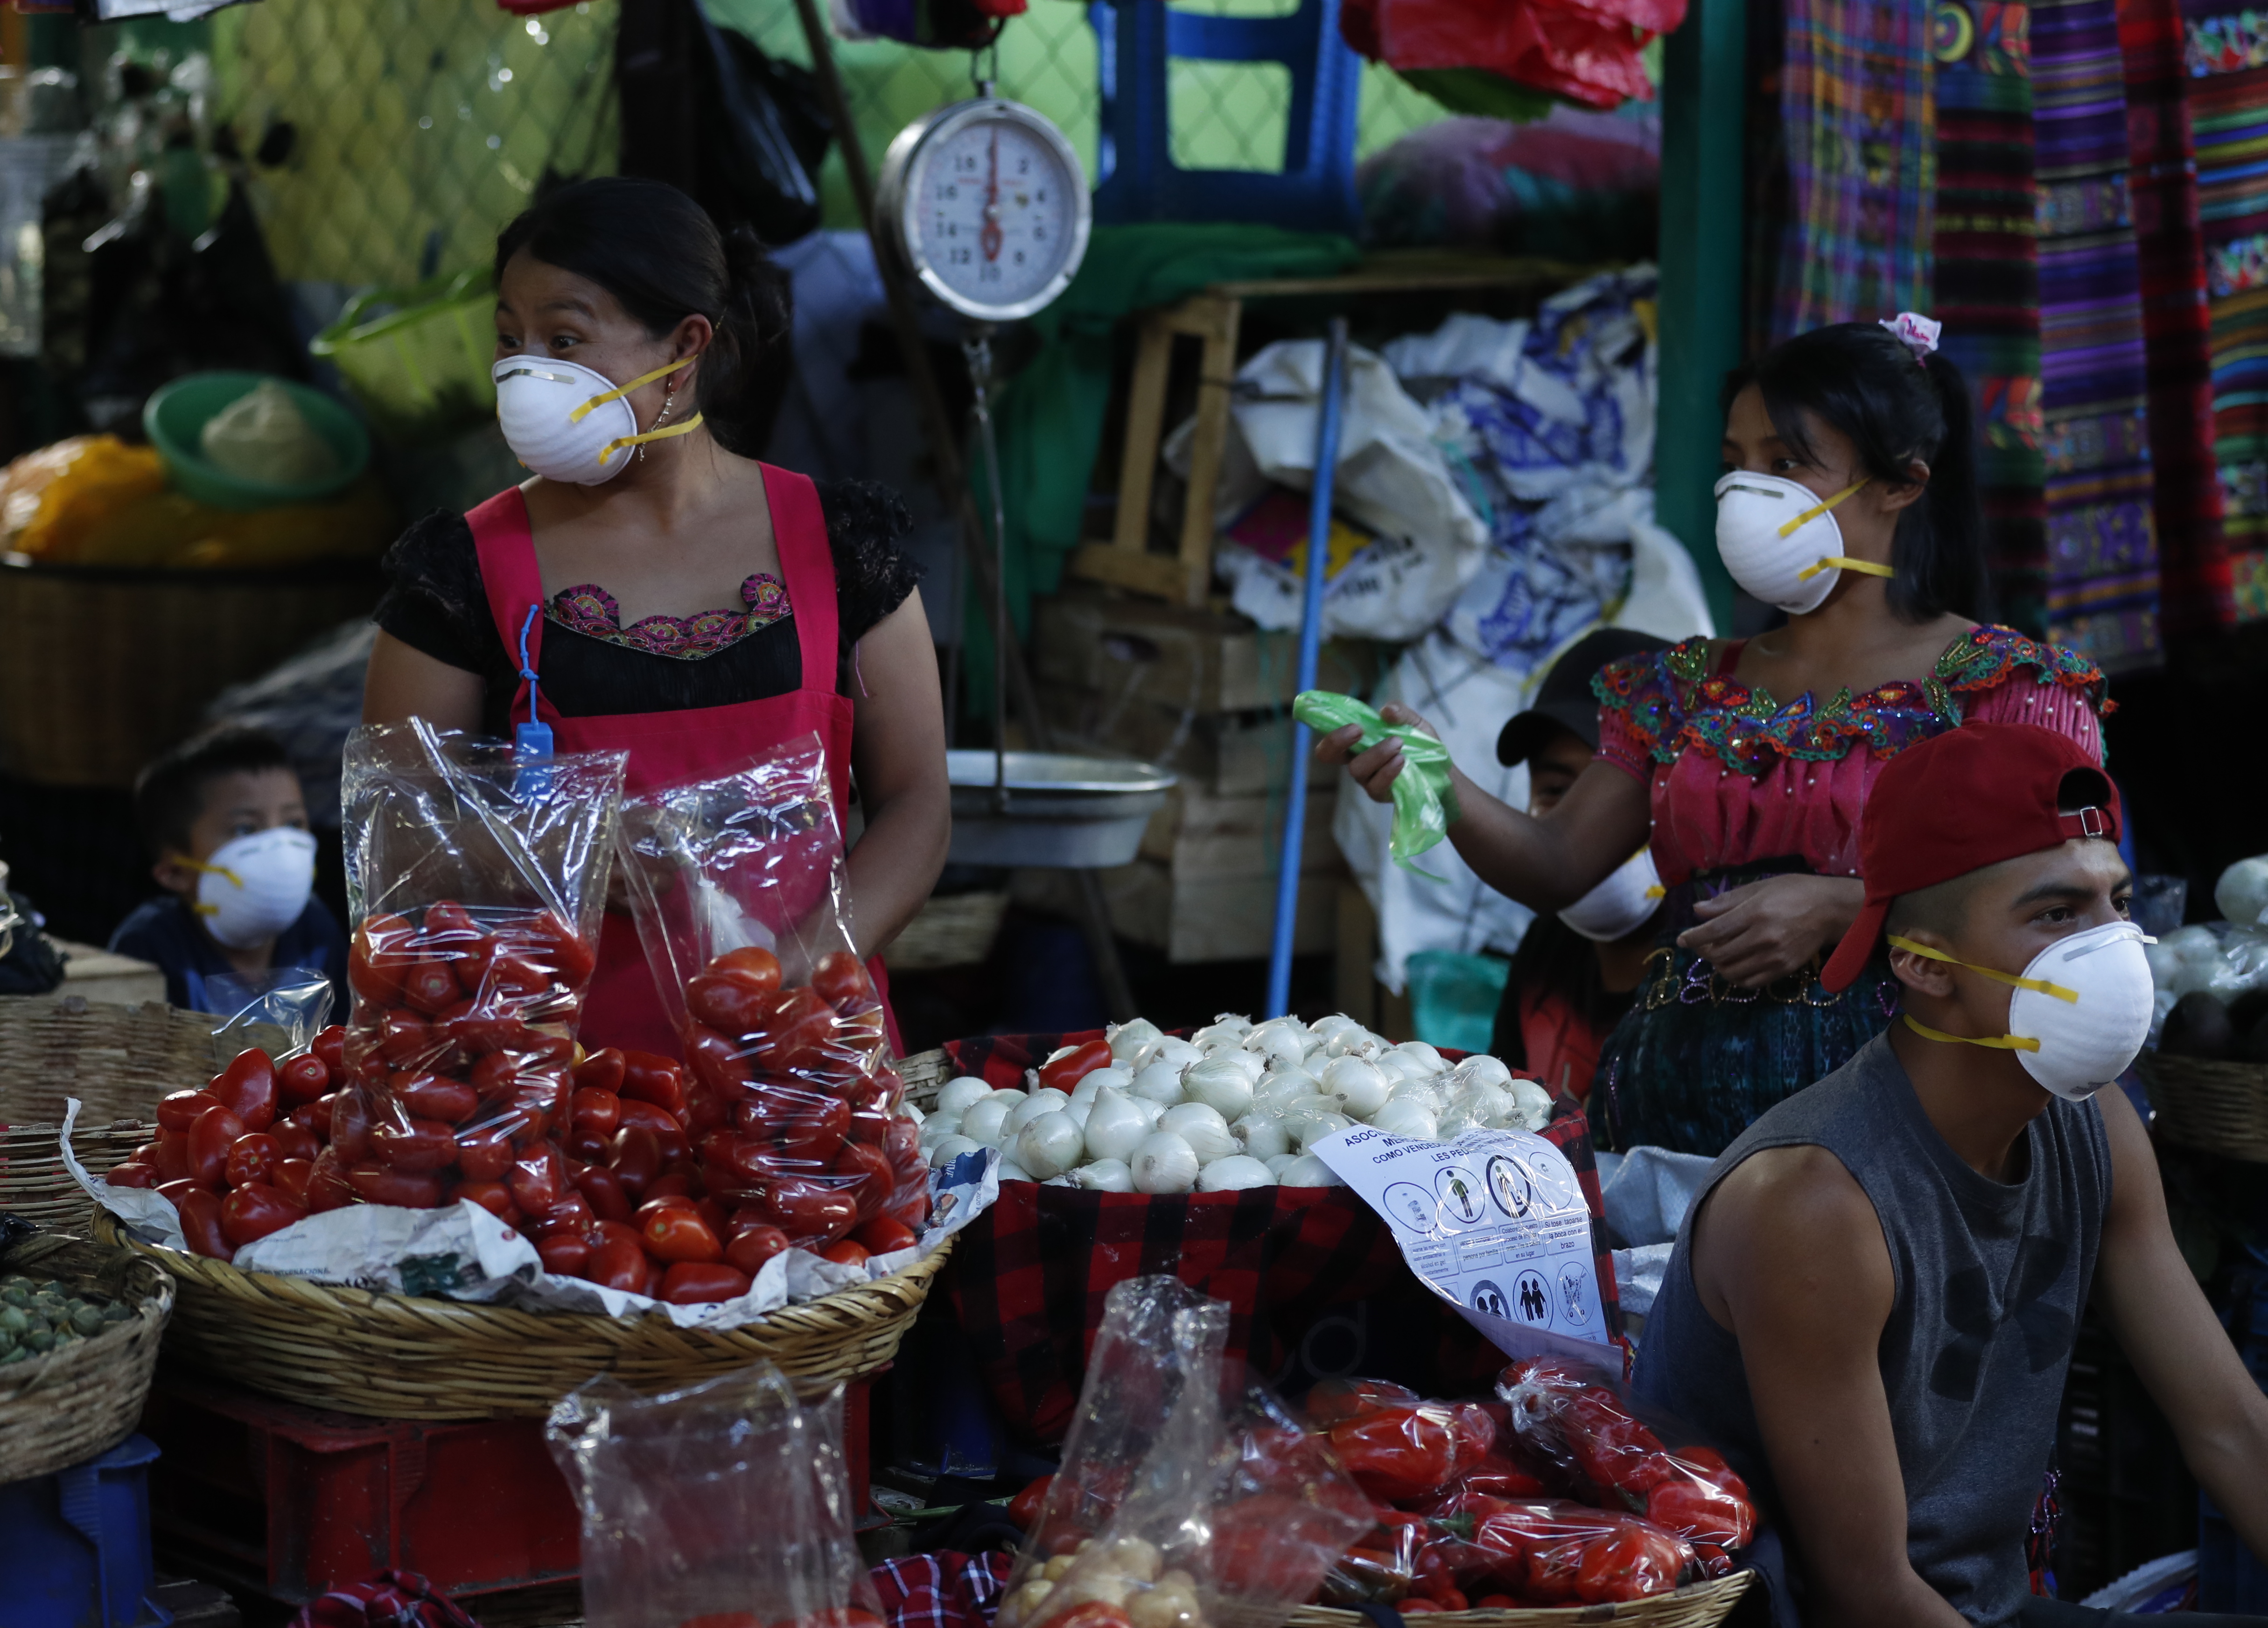 El FMI pronosticó que la economía de Guatemala tendrá un crecimiento negativo para 2020 por efecto del coronavirus mayor a lo previsto por las autoridades monetarias. (Foto Prensa Libre: Hemeroteca) 